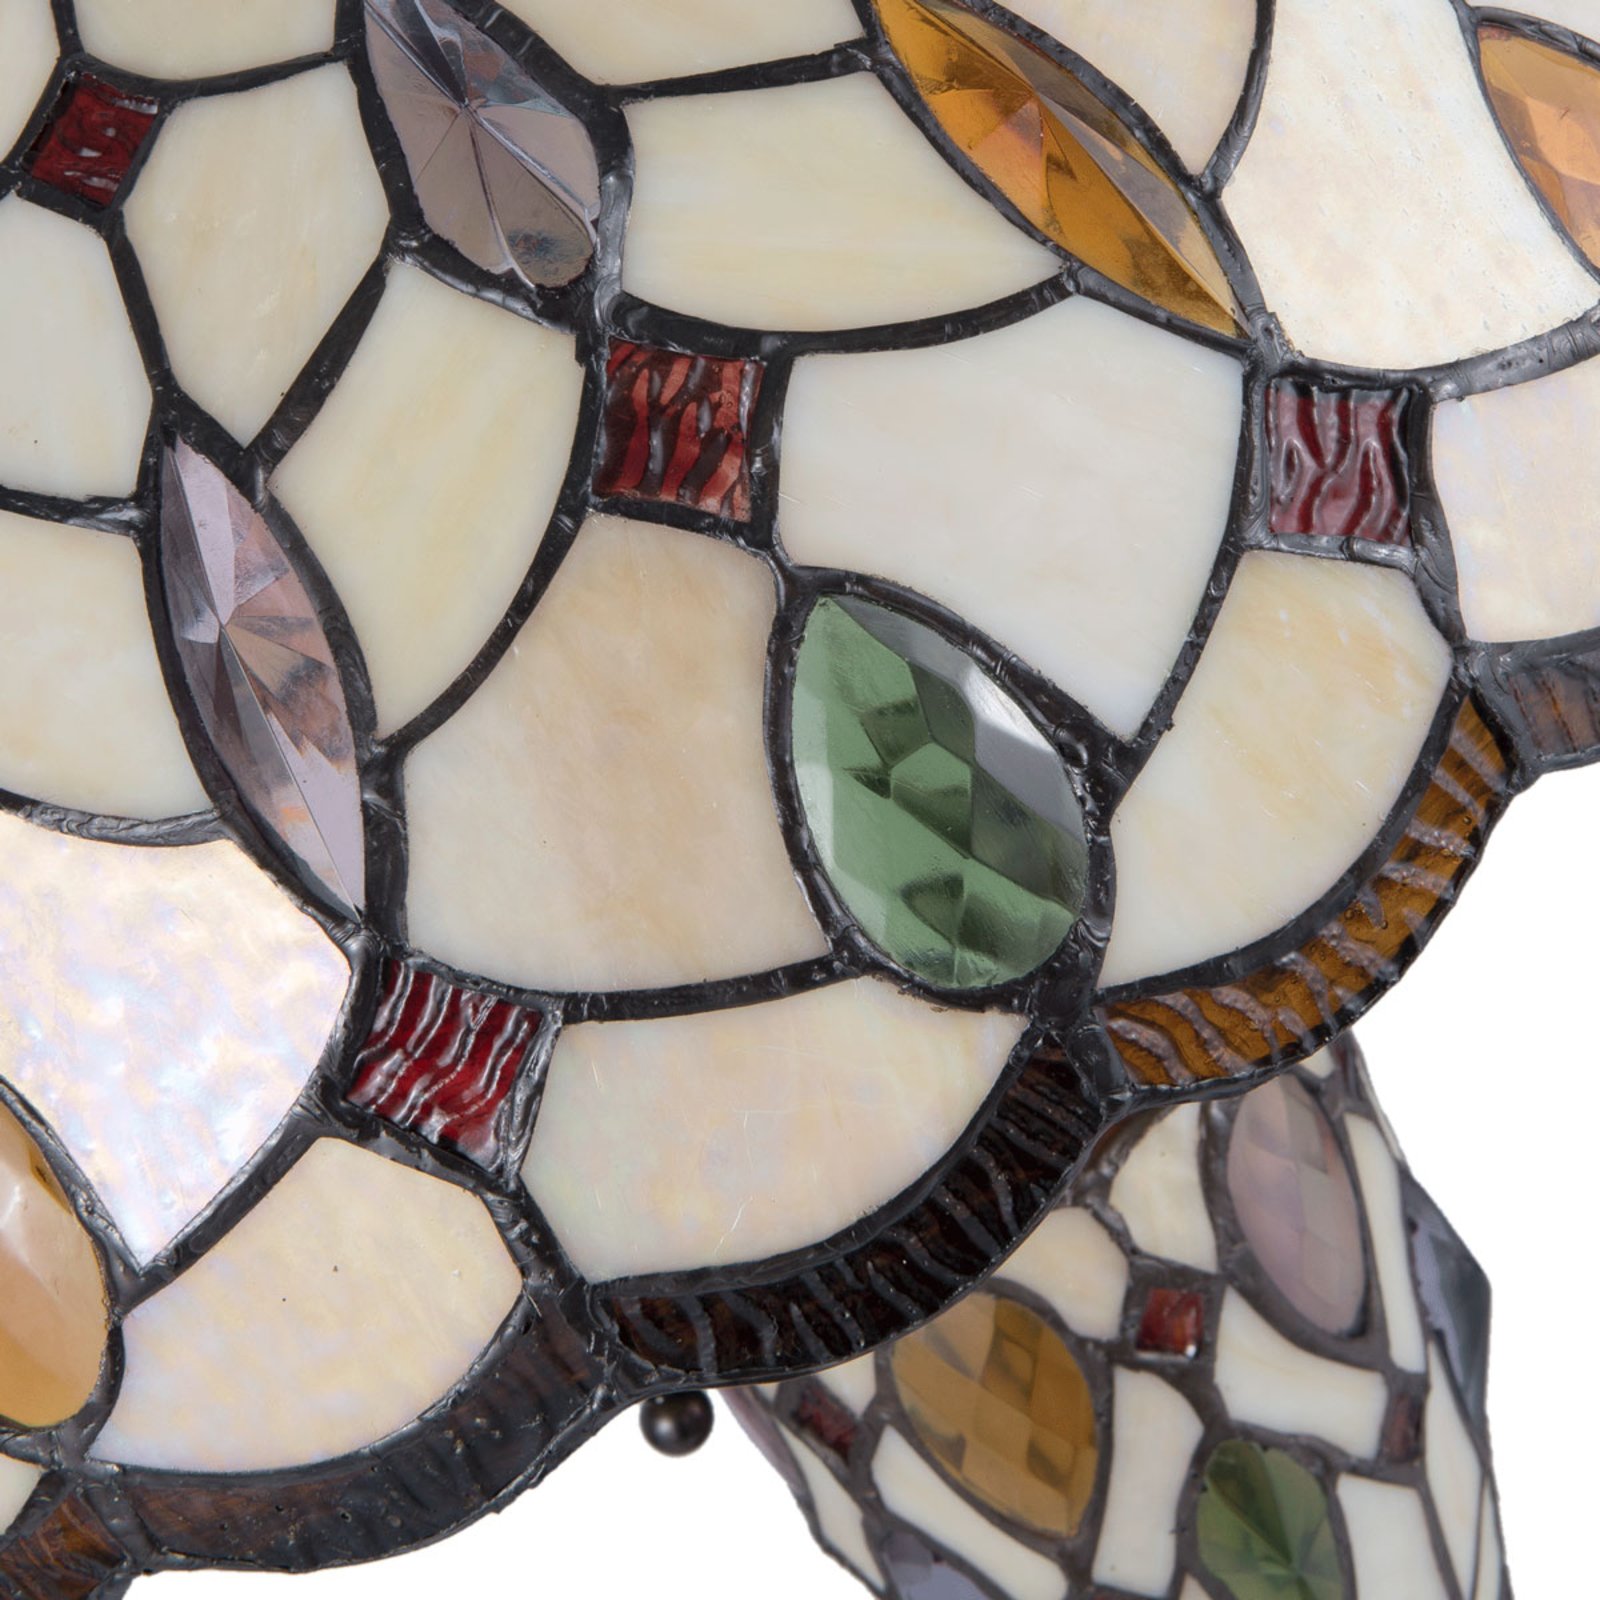 Lampe table 5182 abat-jour verre Tiffany coloré